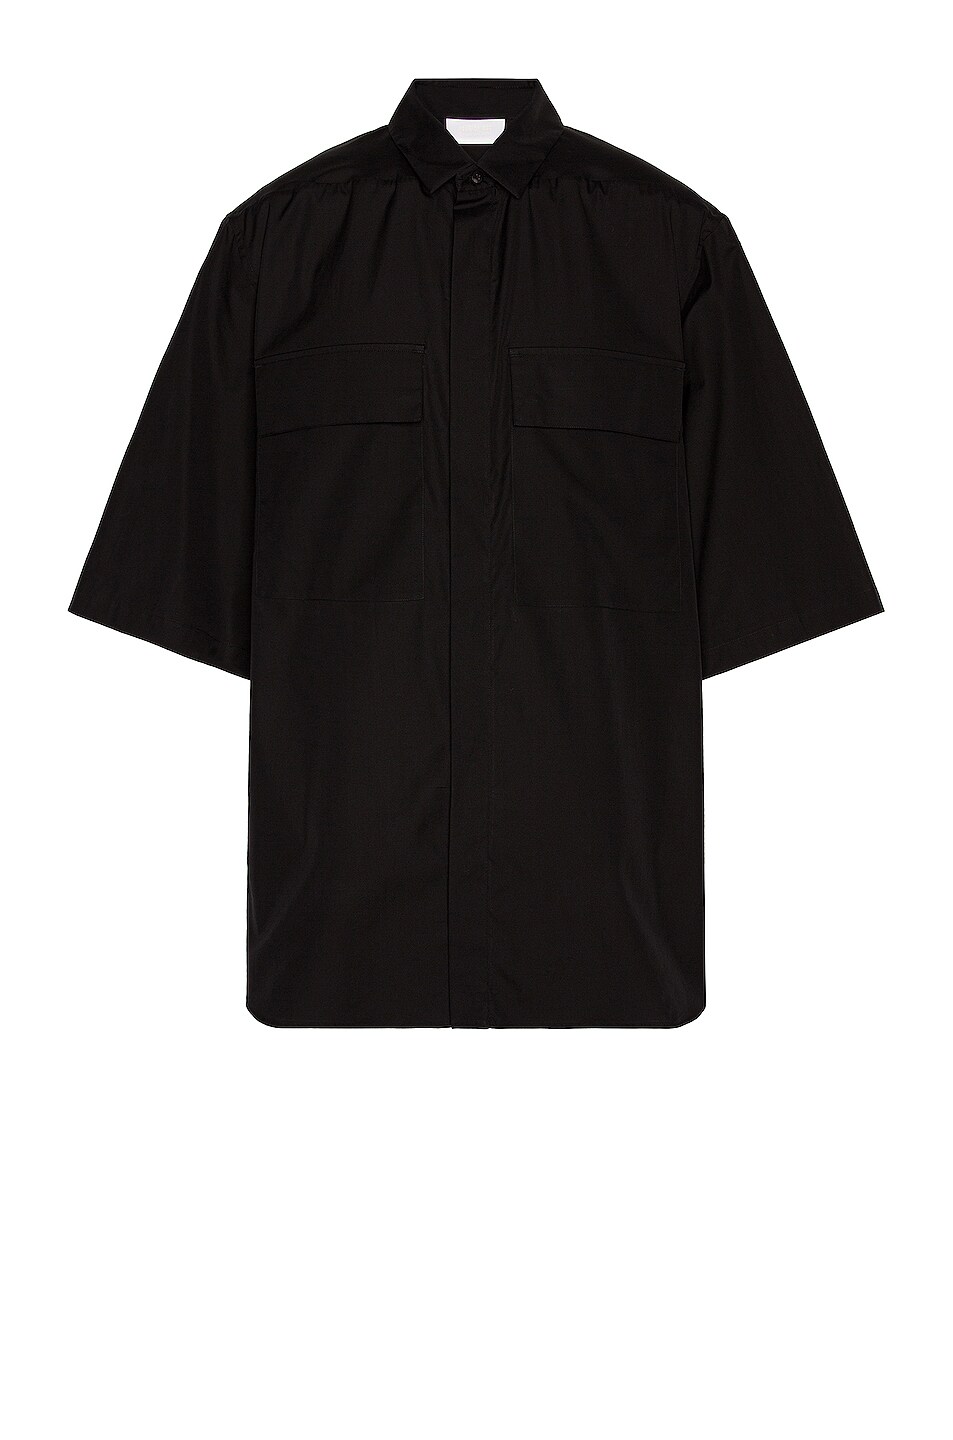 Image 1 of Fear of God Exclusively for Ermenegildo Zegna Oversized Short Sleeve Shirt in Matt Black